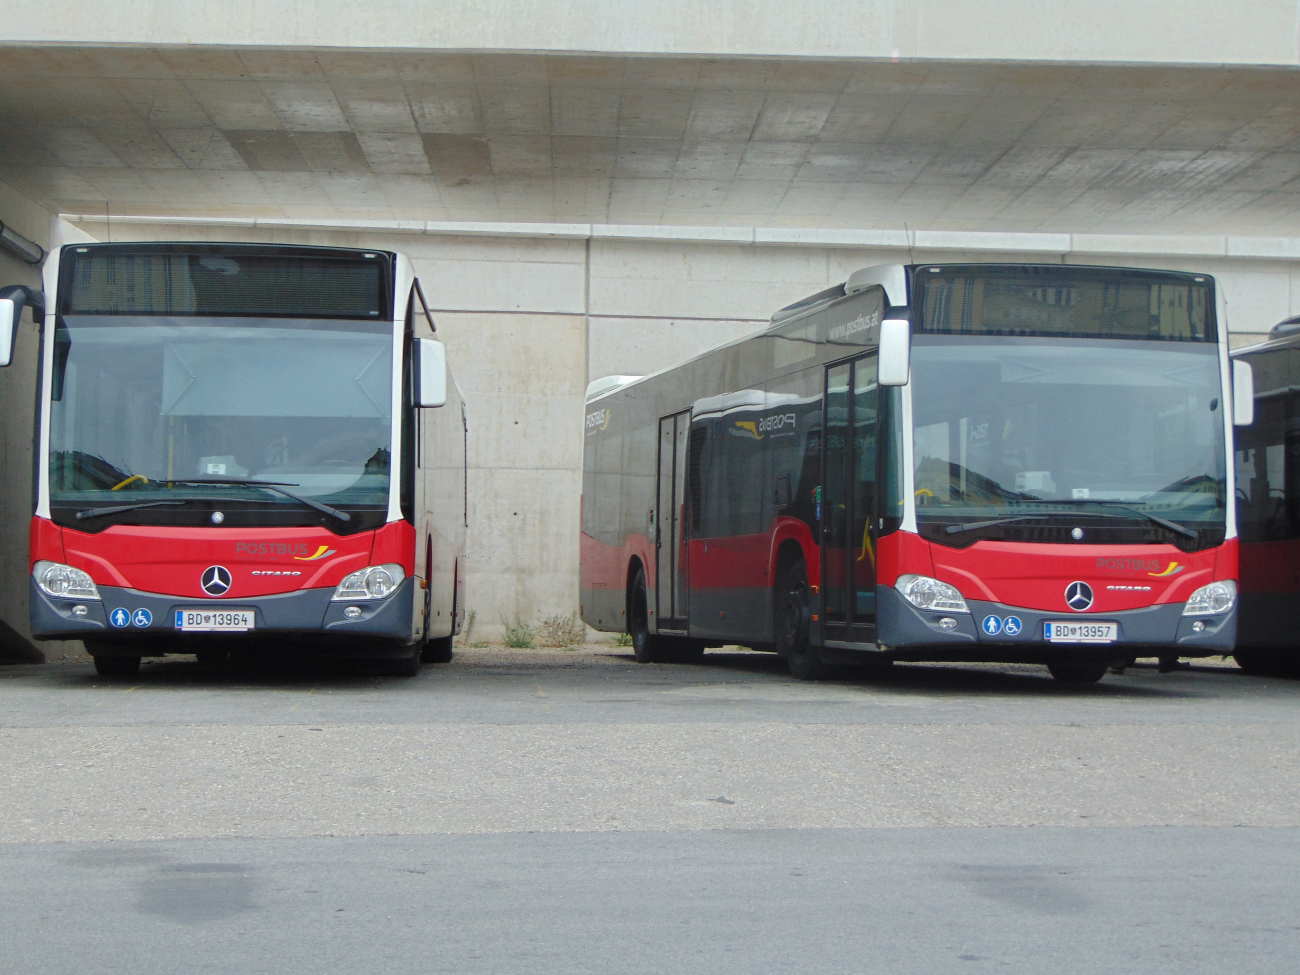 Мёдлинг, Mercedes-Benz Citaro C2 № 13964; Мёдлинг, Mercedes-Benz Citaro C2 № 13957